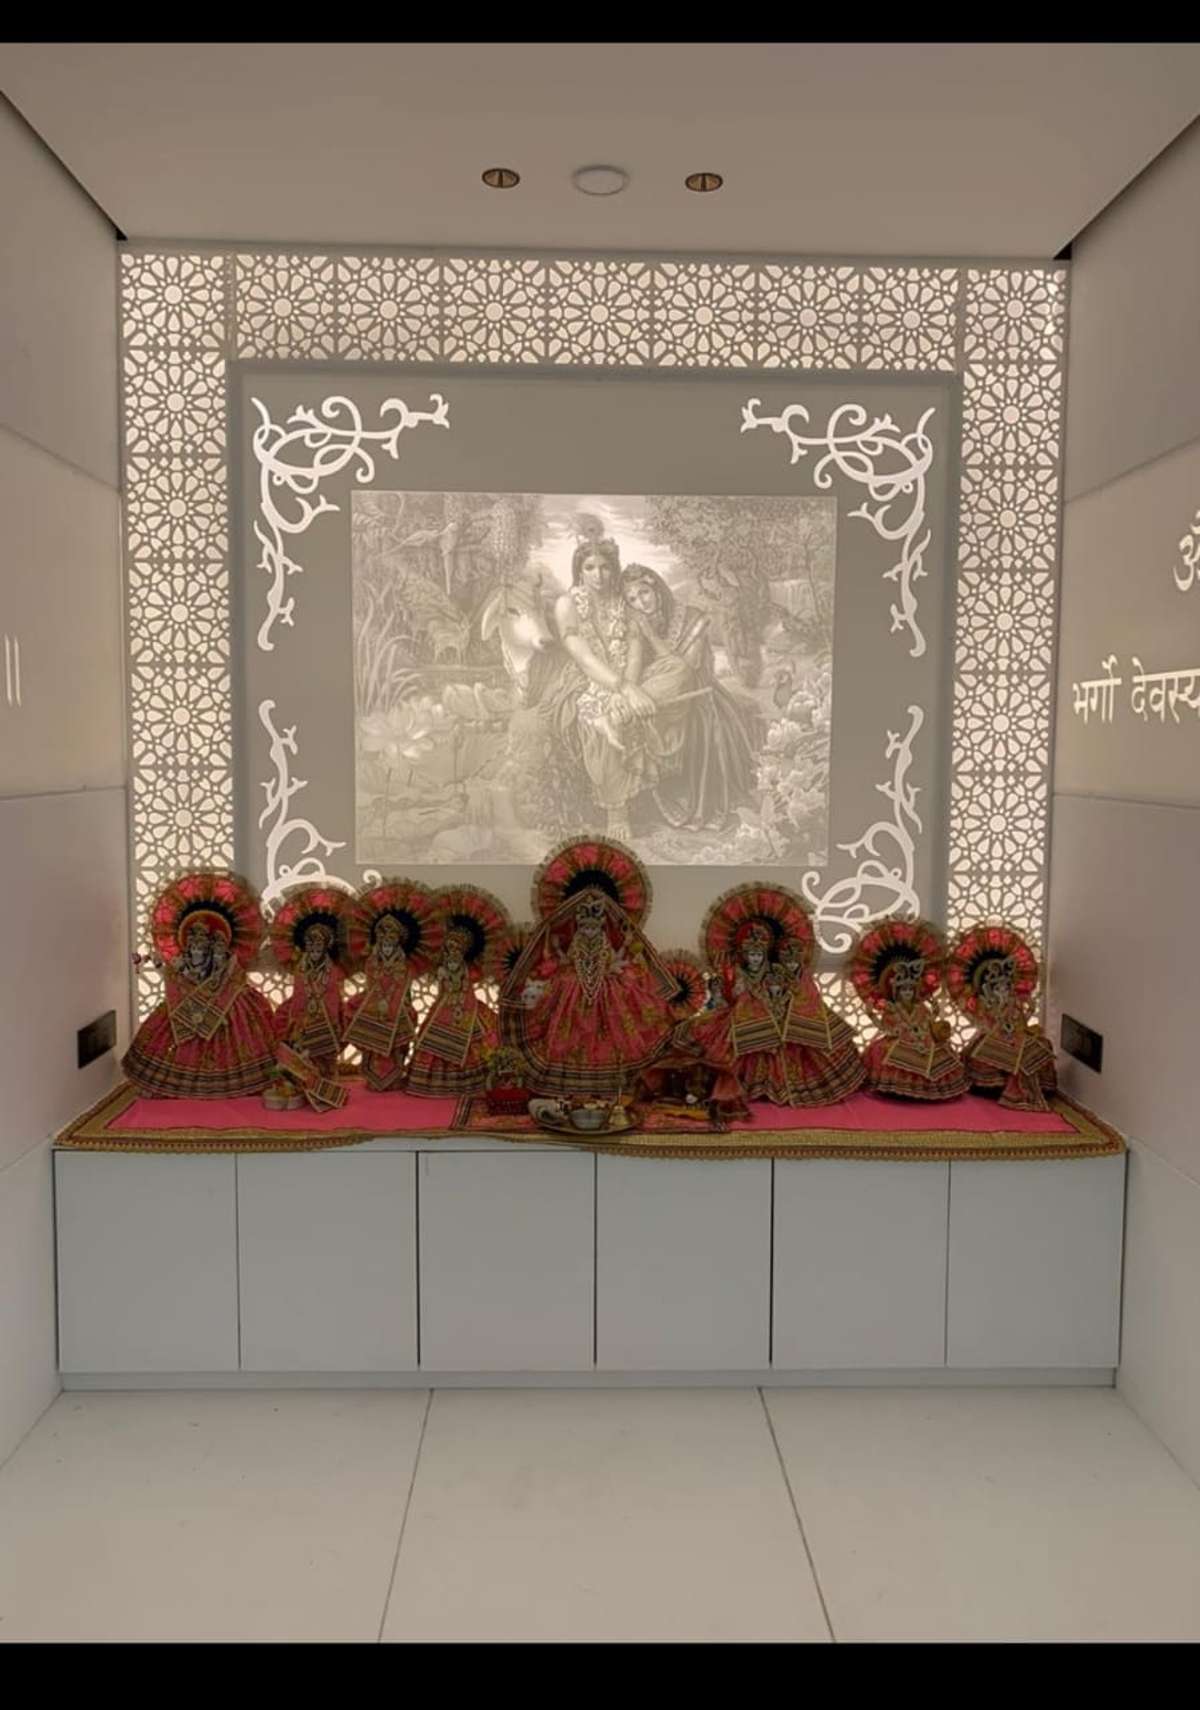 Lighting, Prayer Room Designs by Building Supplies Vishal Shukla, Delhi | Kolo